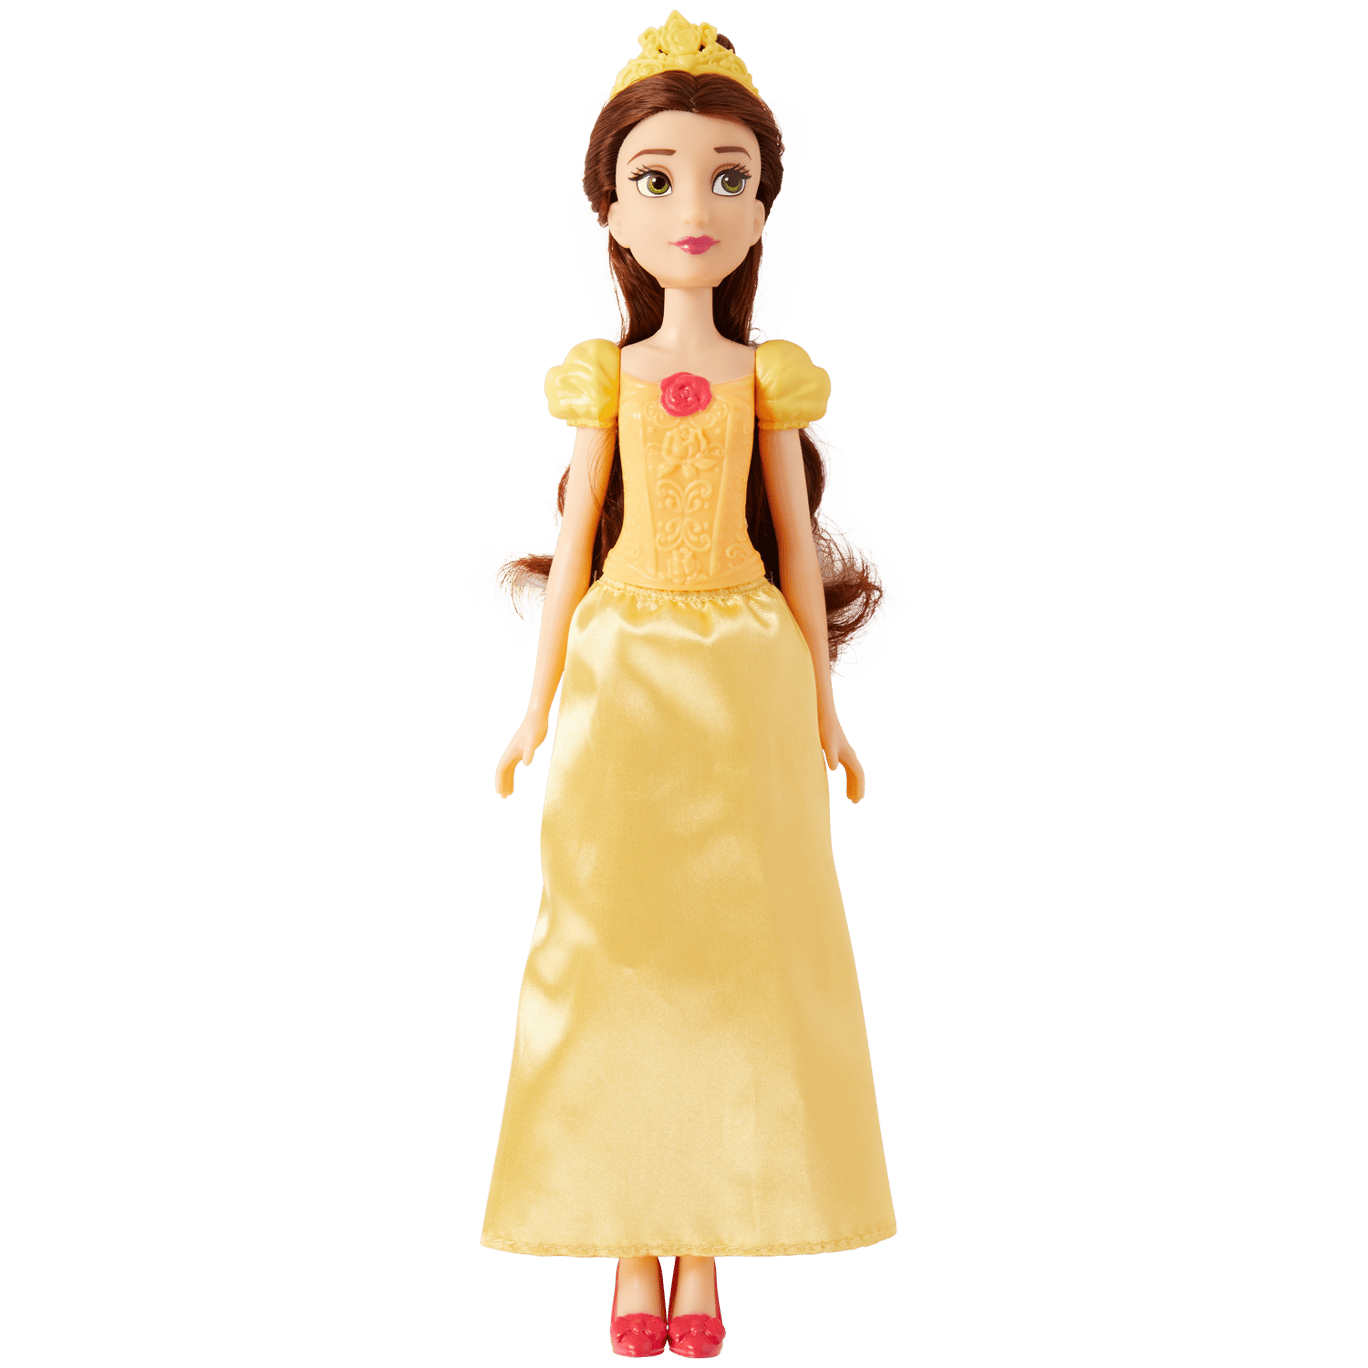 Wet en regelgeving monteren En Disney Princess pop | Action.com